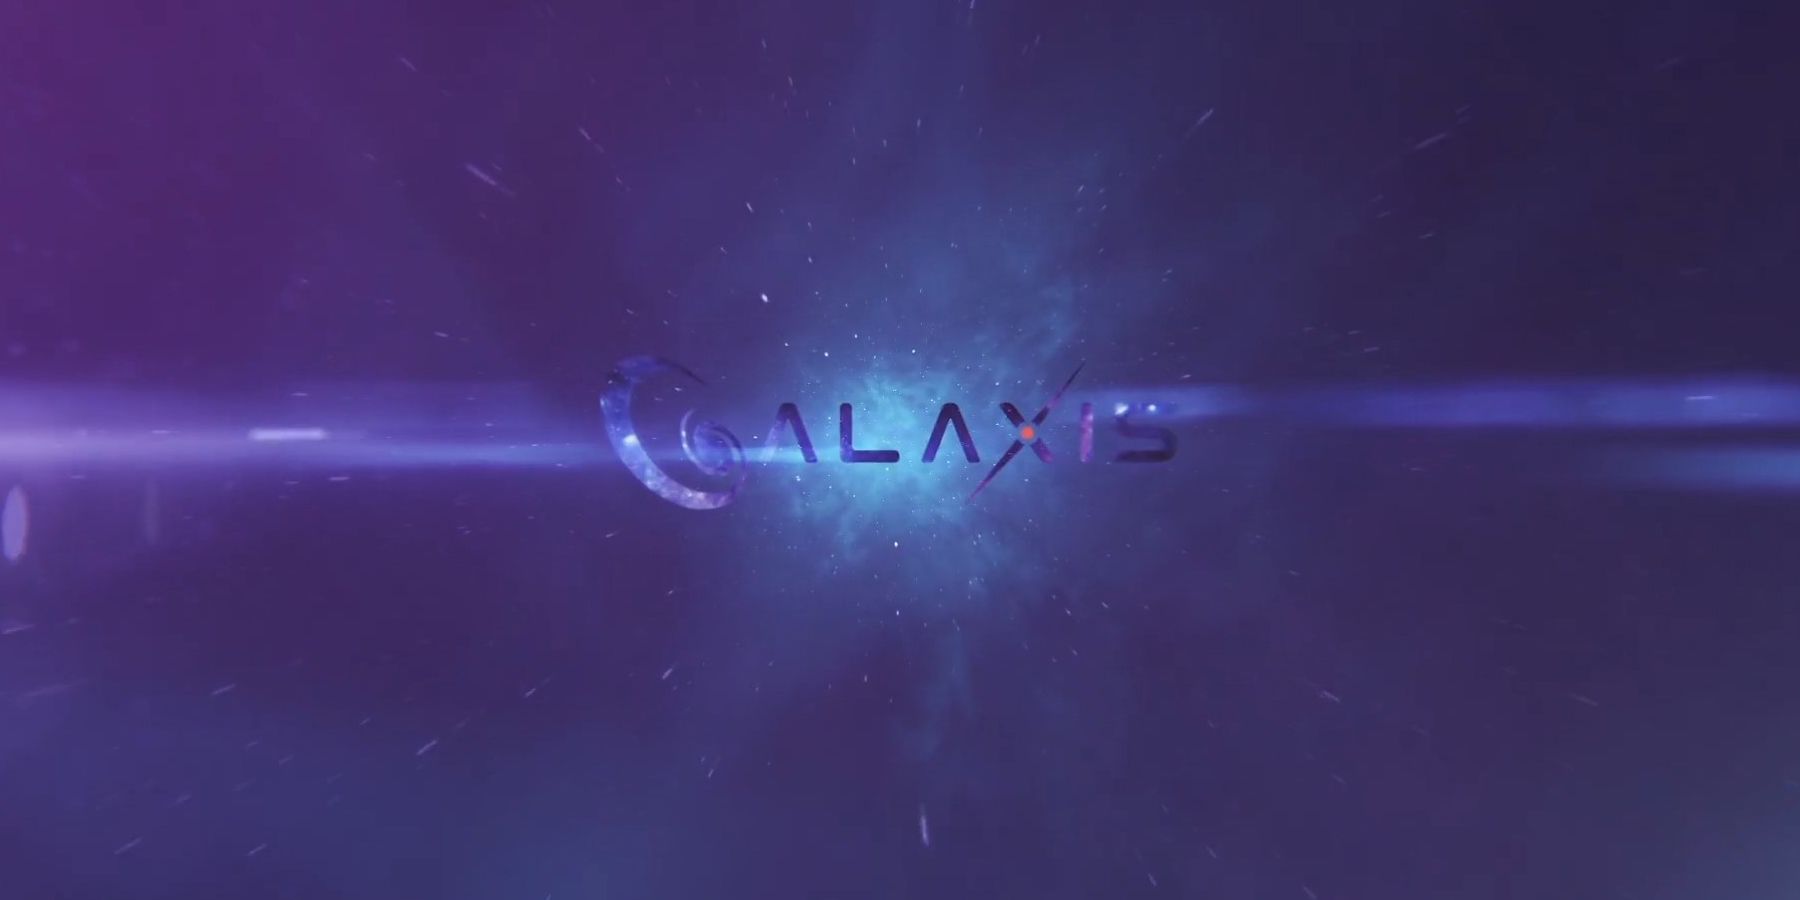 Rozhovor Galaxis: Generální ředitel Max Gallardo podrobně popisuje bodové systémy streamování, moderování komunity a další